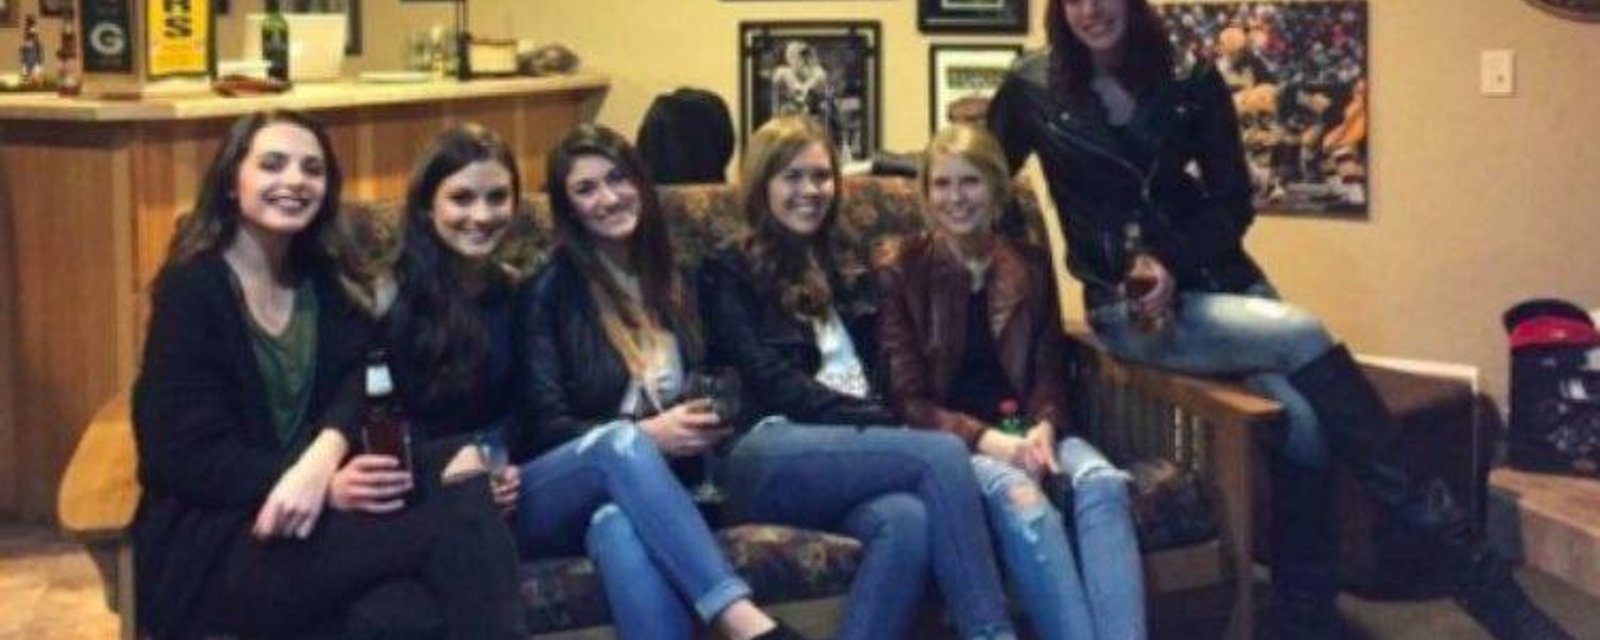 Arrivez-vous à trouver les jambes de toutes les filles sur cette photo?